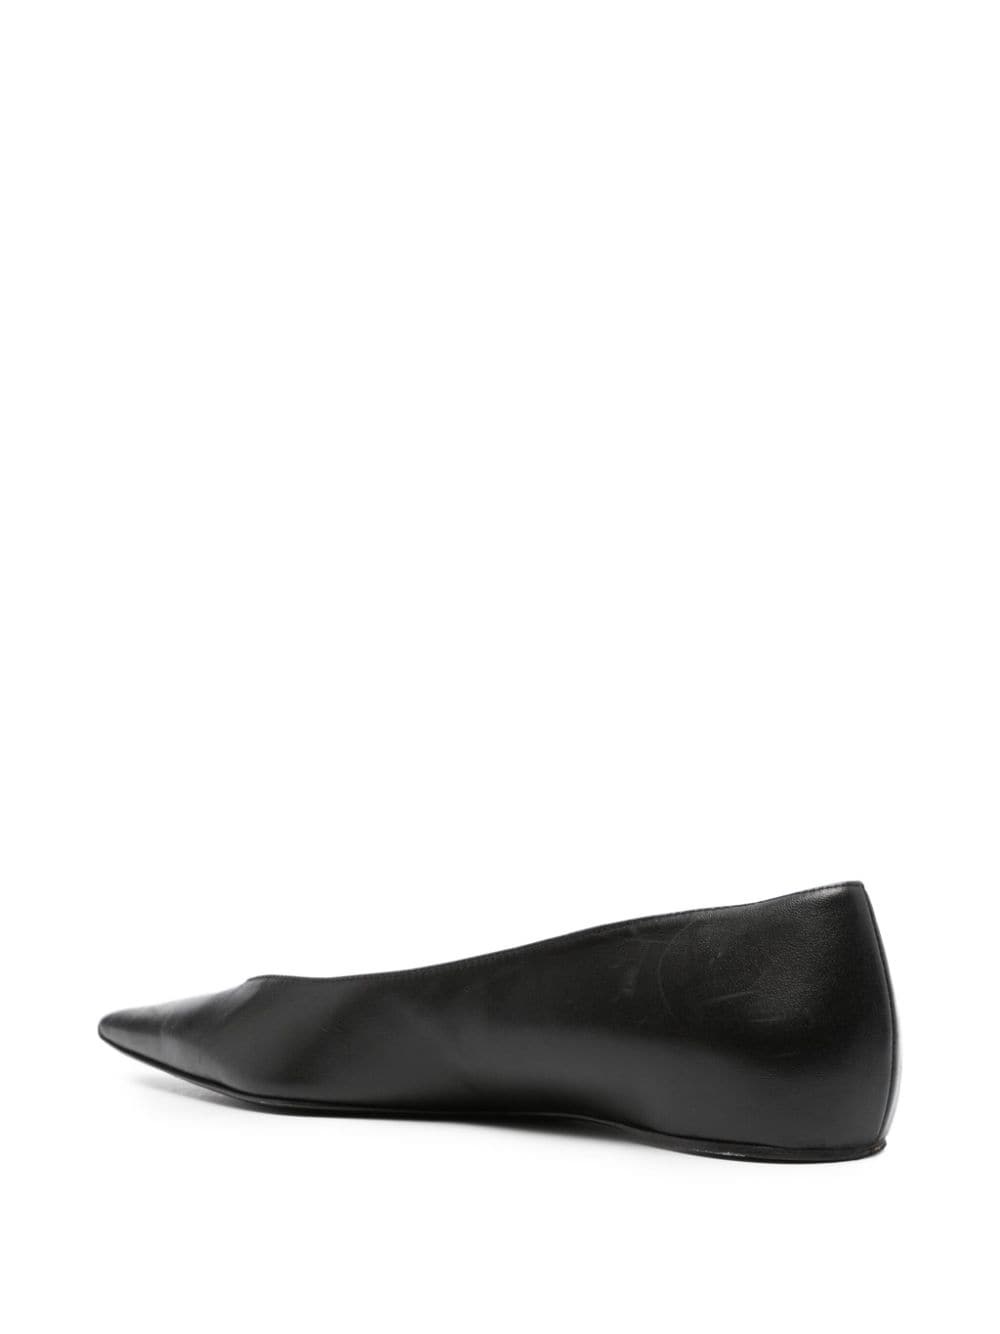 The Asymmetric ballerina shoes - 3